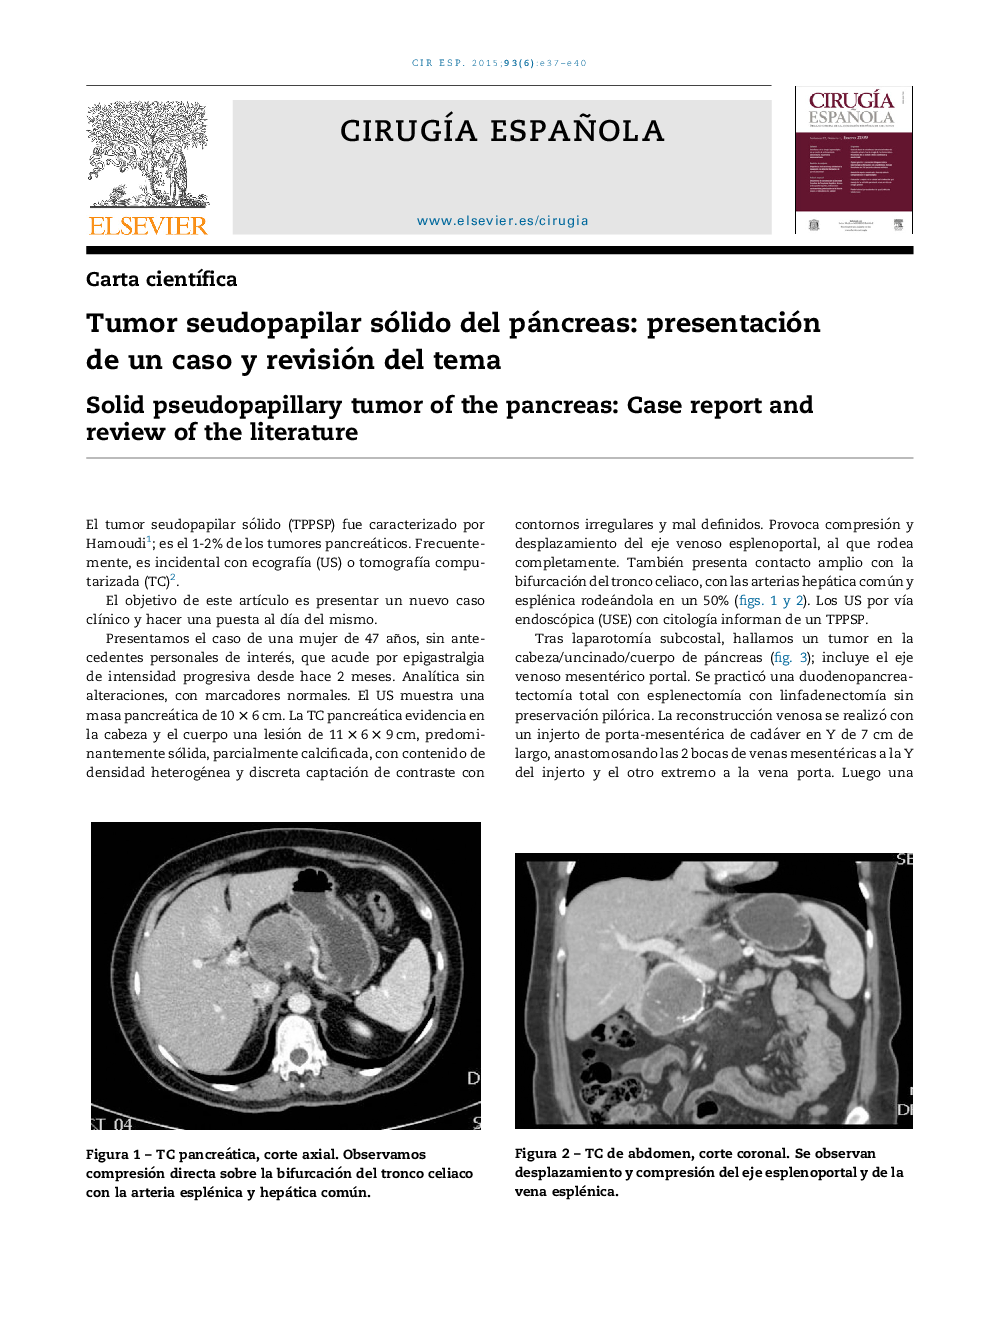 Tumor seudopapilar sólido del páncreas: presentación de un caso y revisión del tema